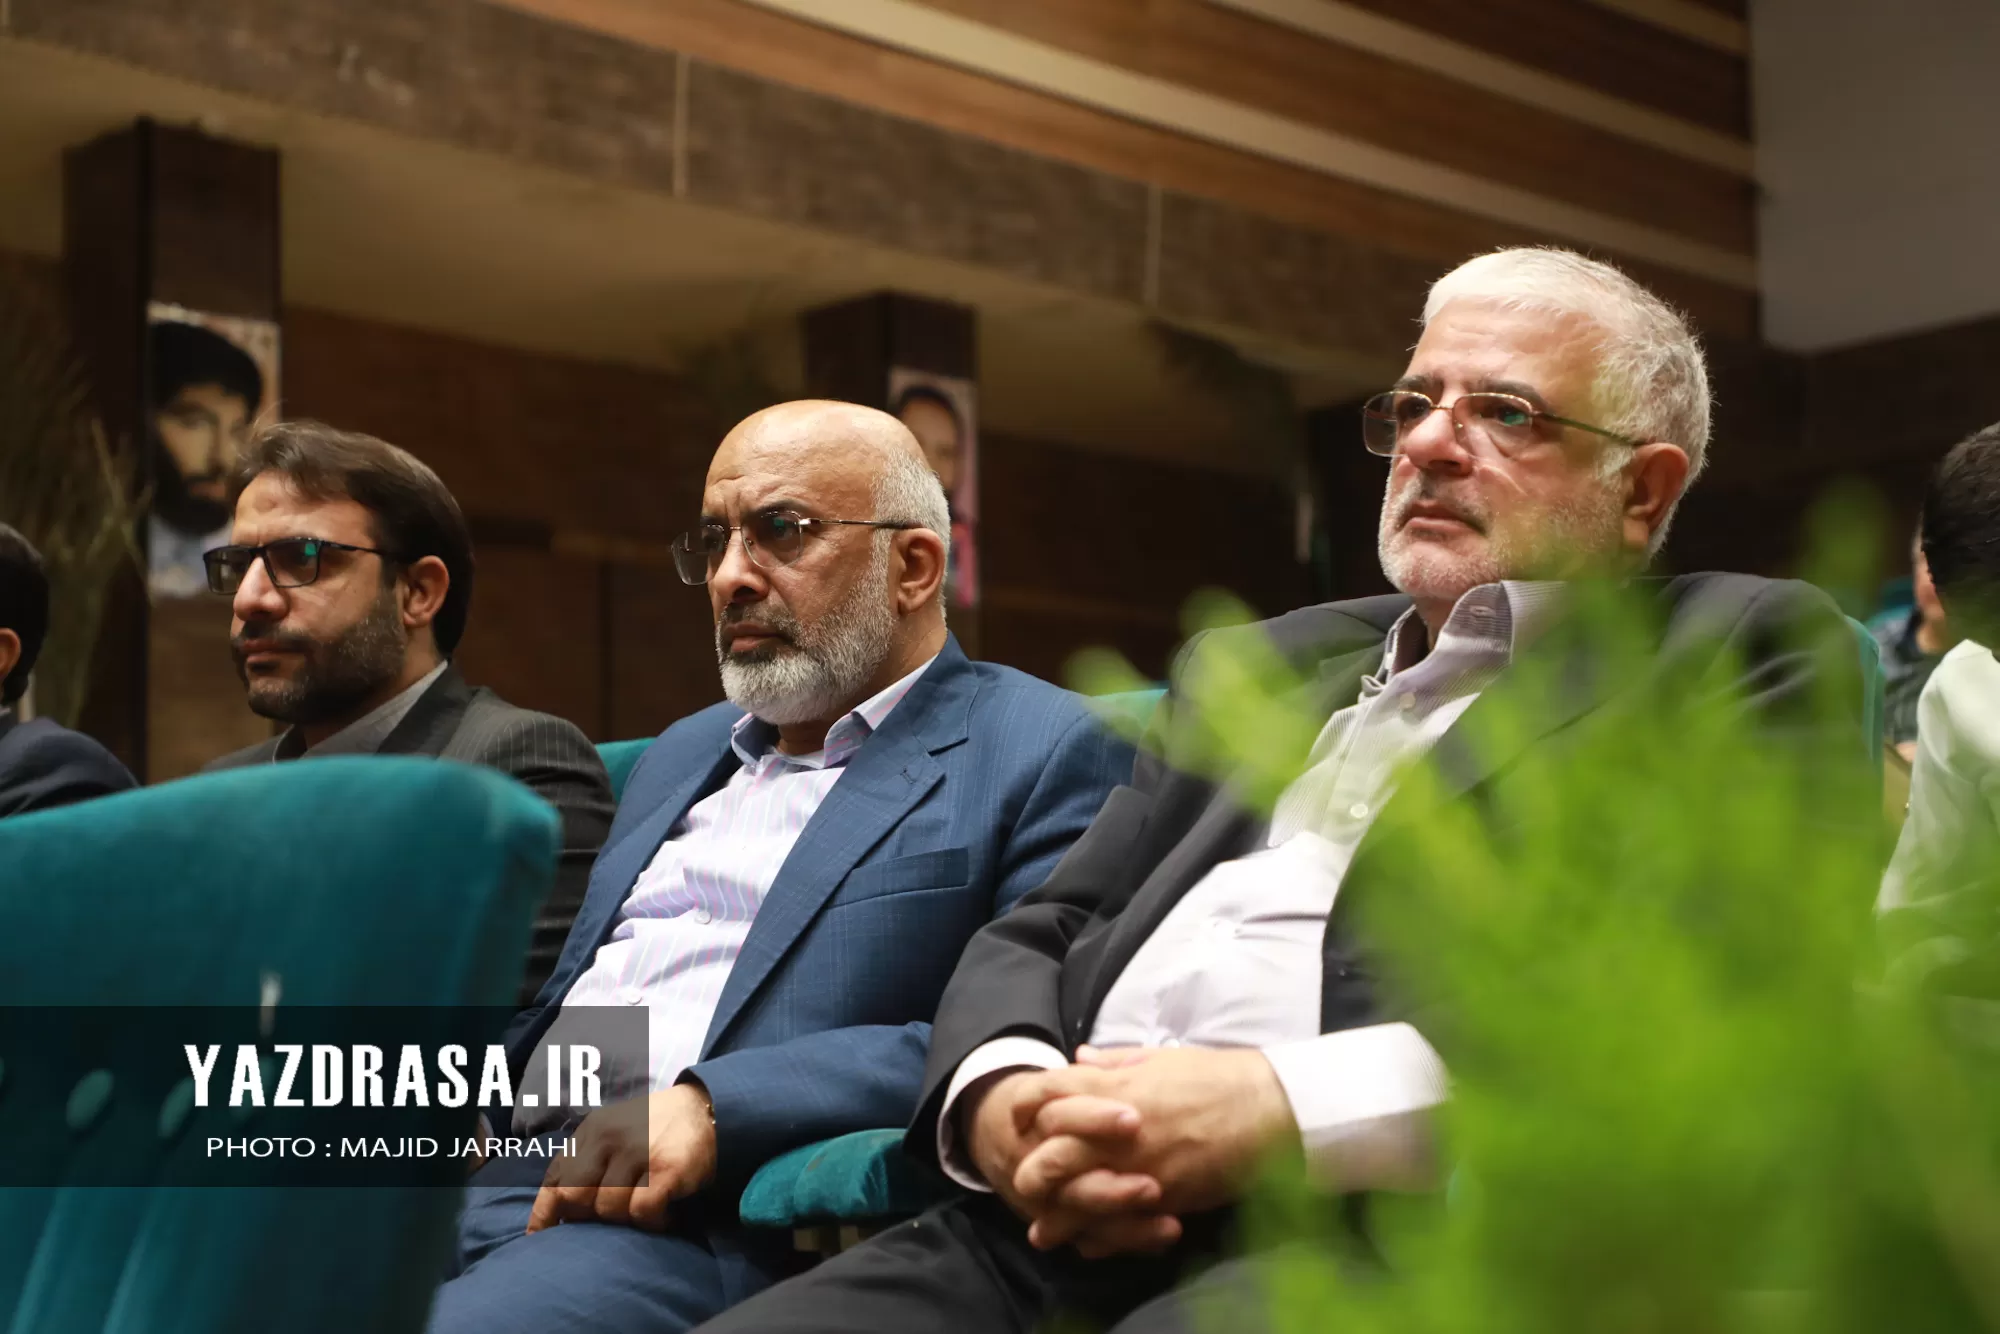 دیدار معلمان و فرهنگیان یزد با سردار نقدی